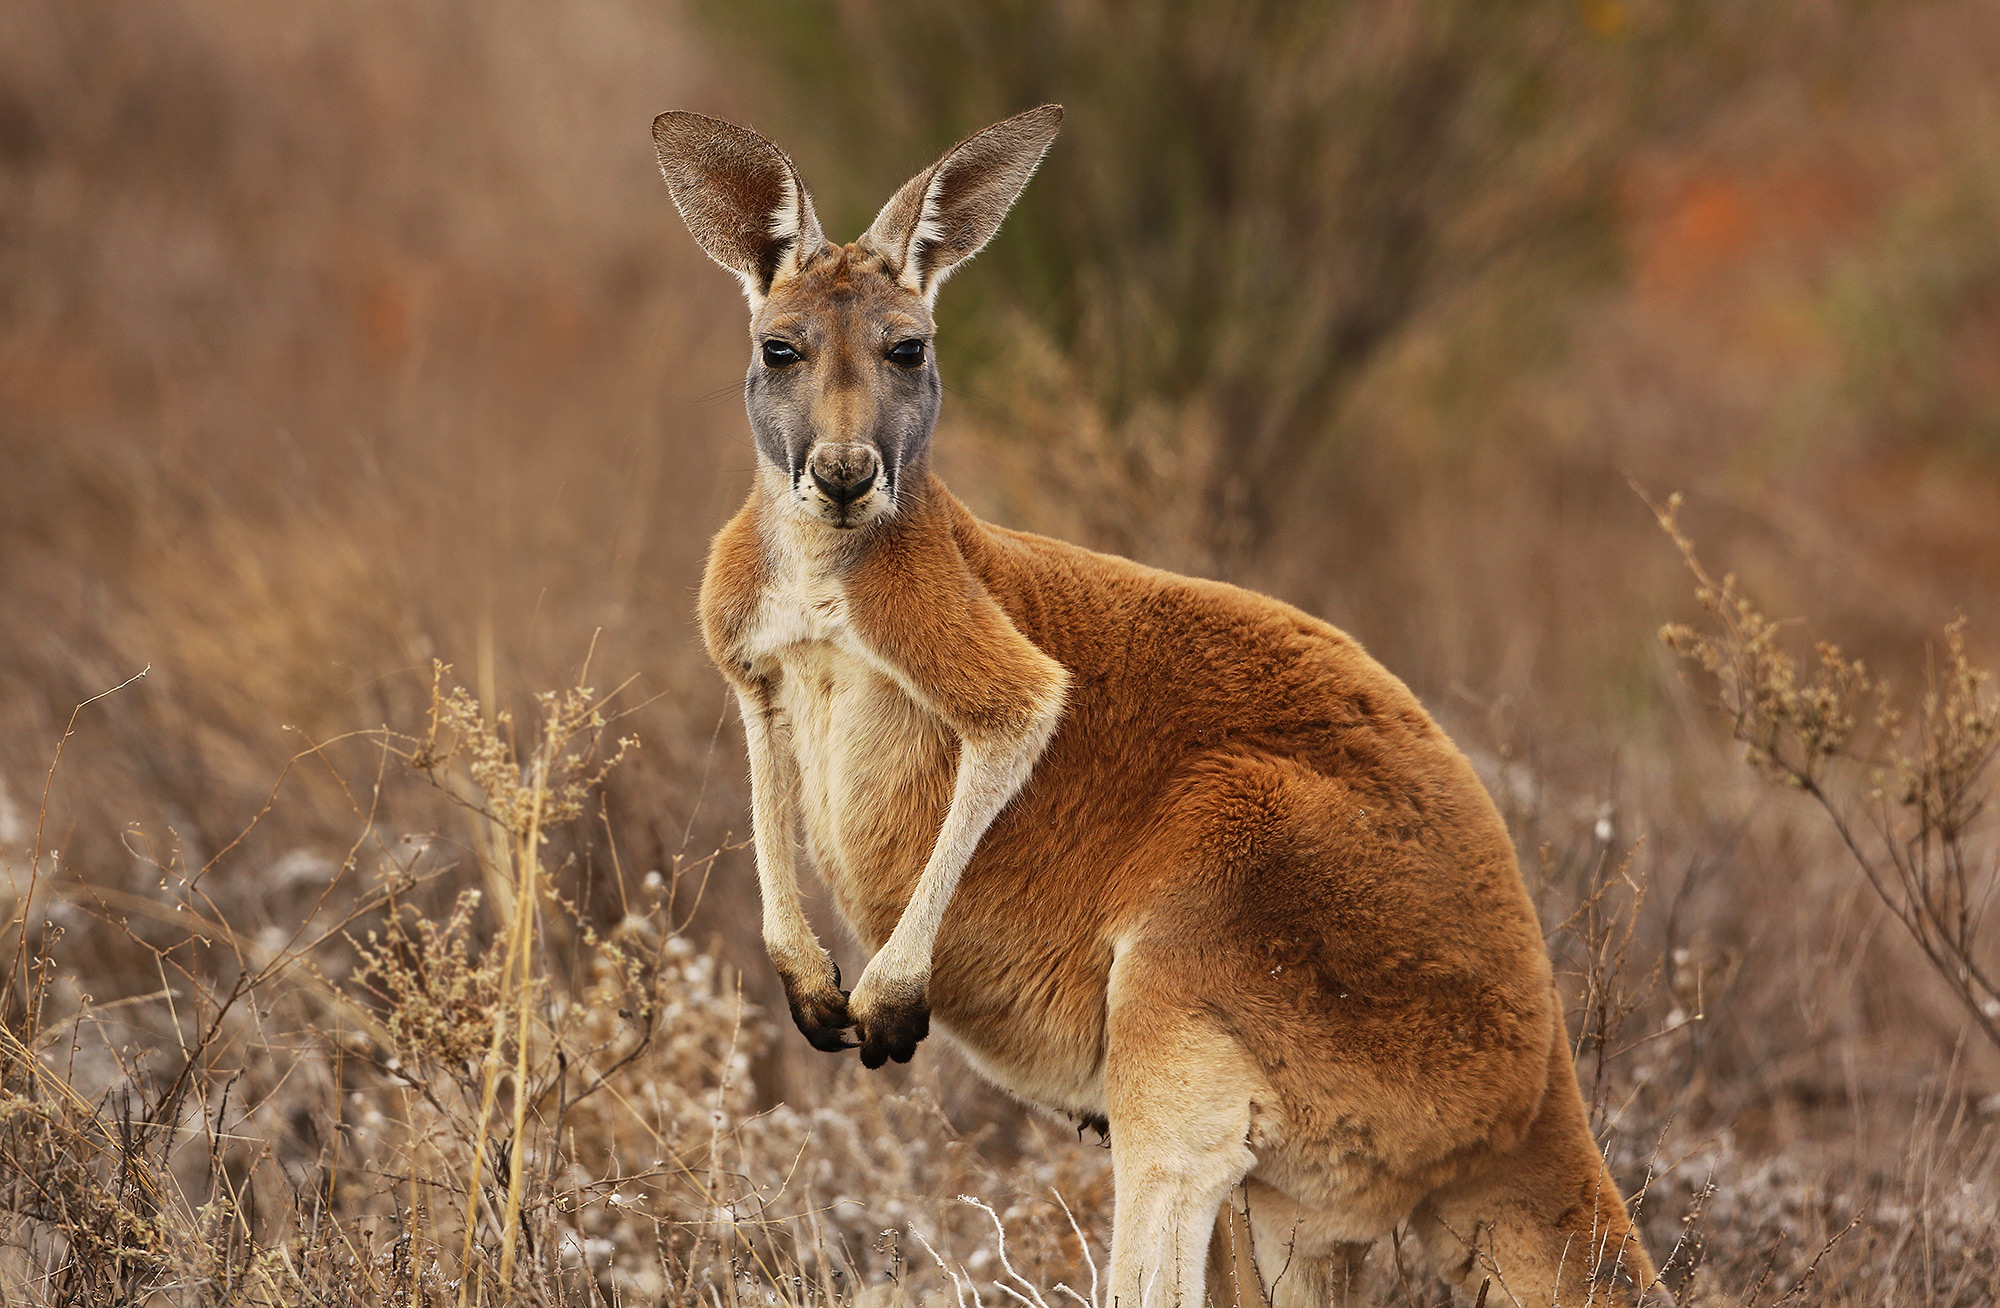 Detail Images Of Kangaroos Nomer 10